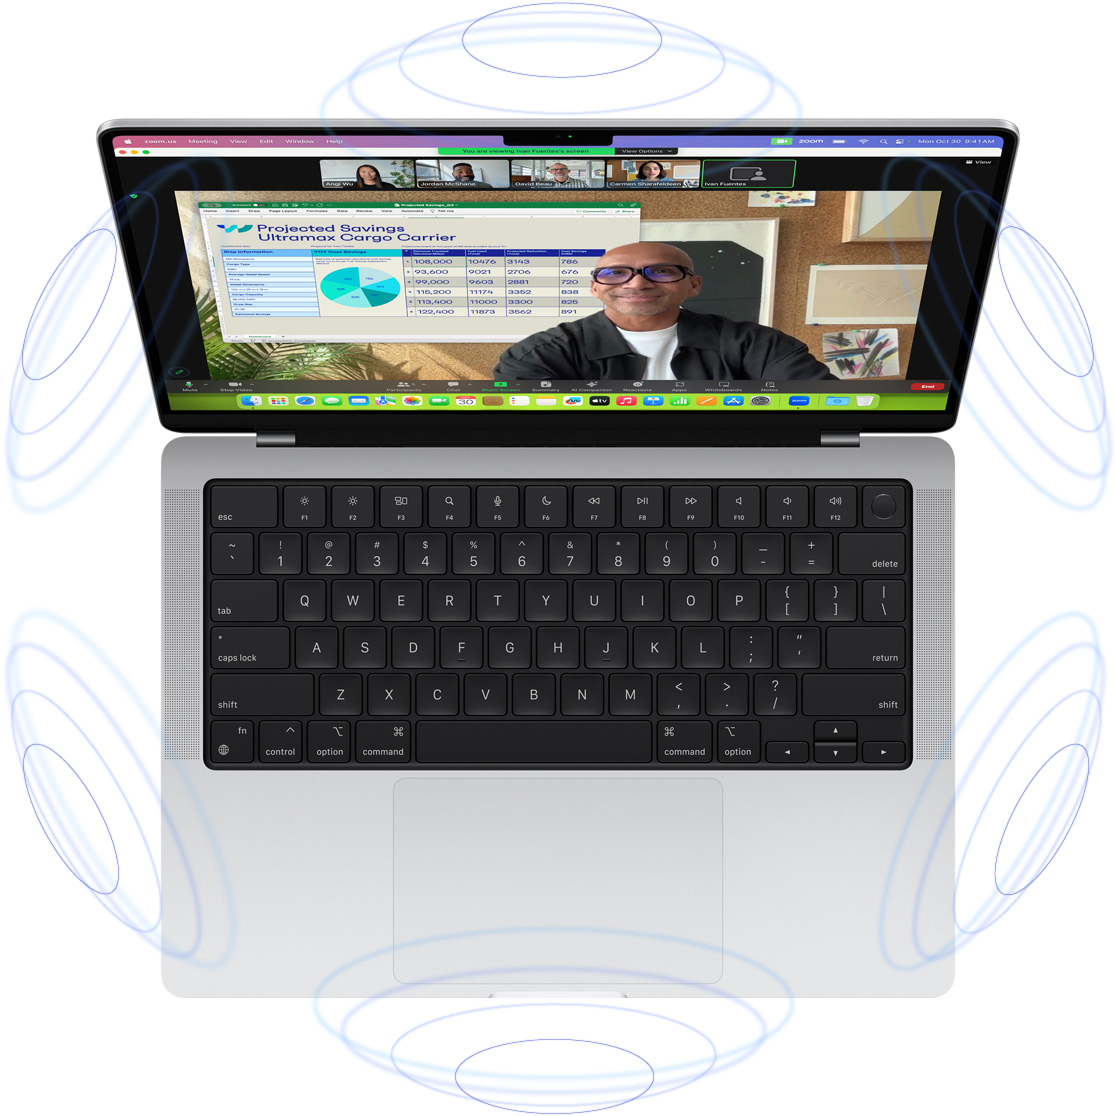 „FaceTime“ vaizdo skambutis „MacBook Pro“ ekrane, aplink mėlynų apskritimų iliustracijos, kurie rodo erdvinio garso sukuriamą 3D įspūdį